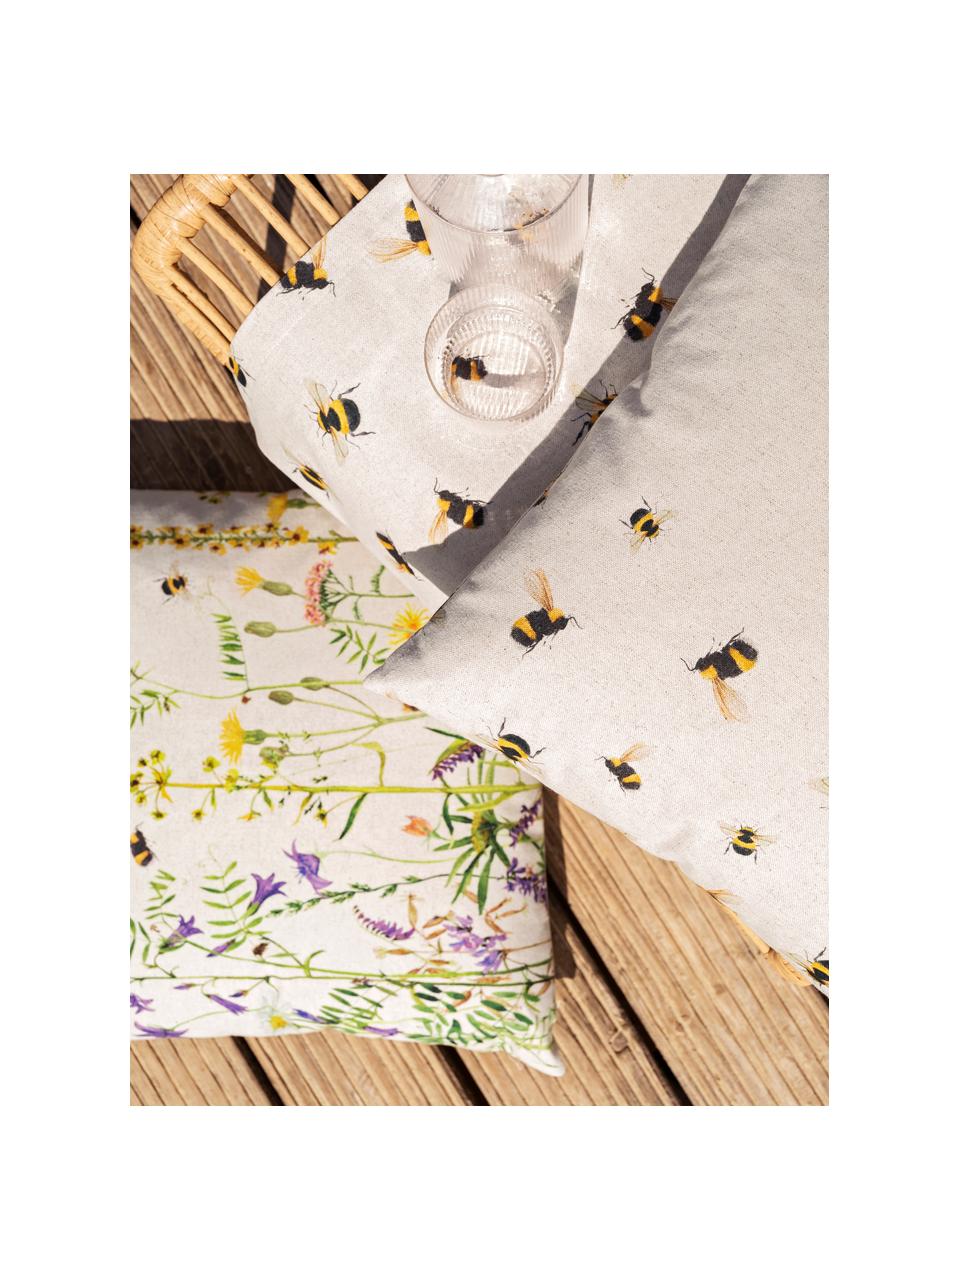 Tafelloper Biene met bloemen motief, 85% katoen, 15% linnen, Beige, multicolour, B 40 x L 145 cm